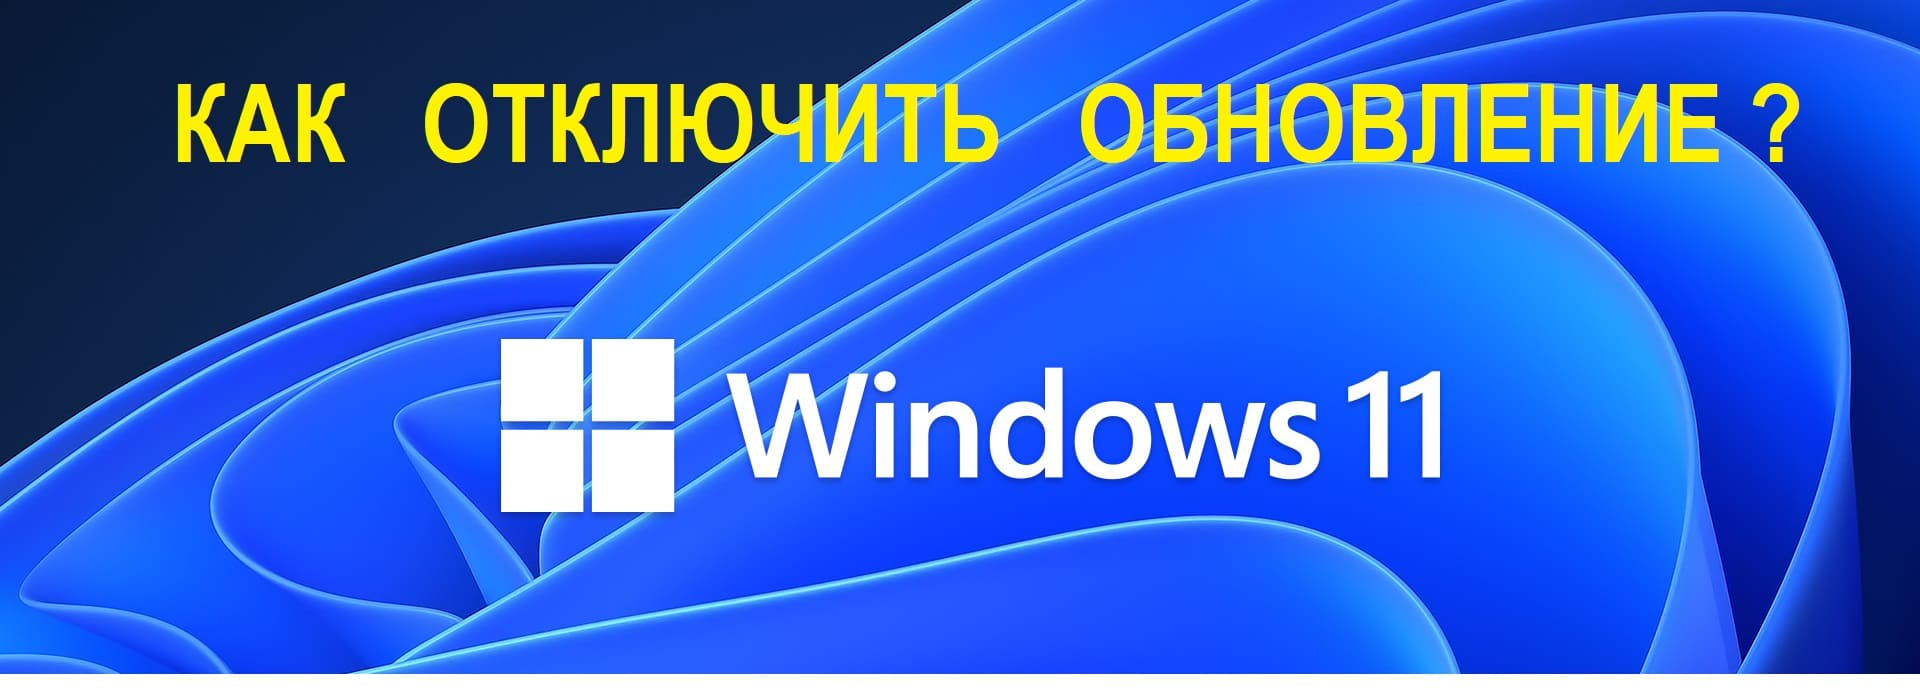 Как отключить обновления Windows 11